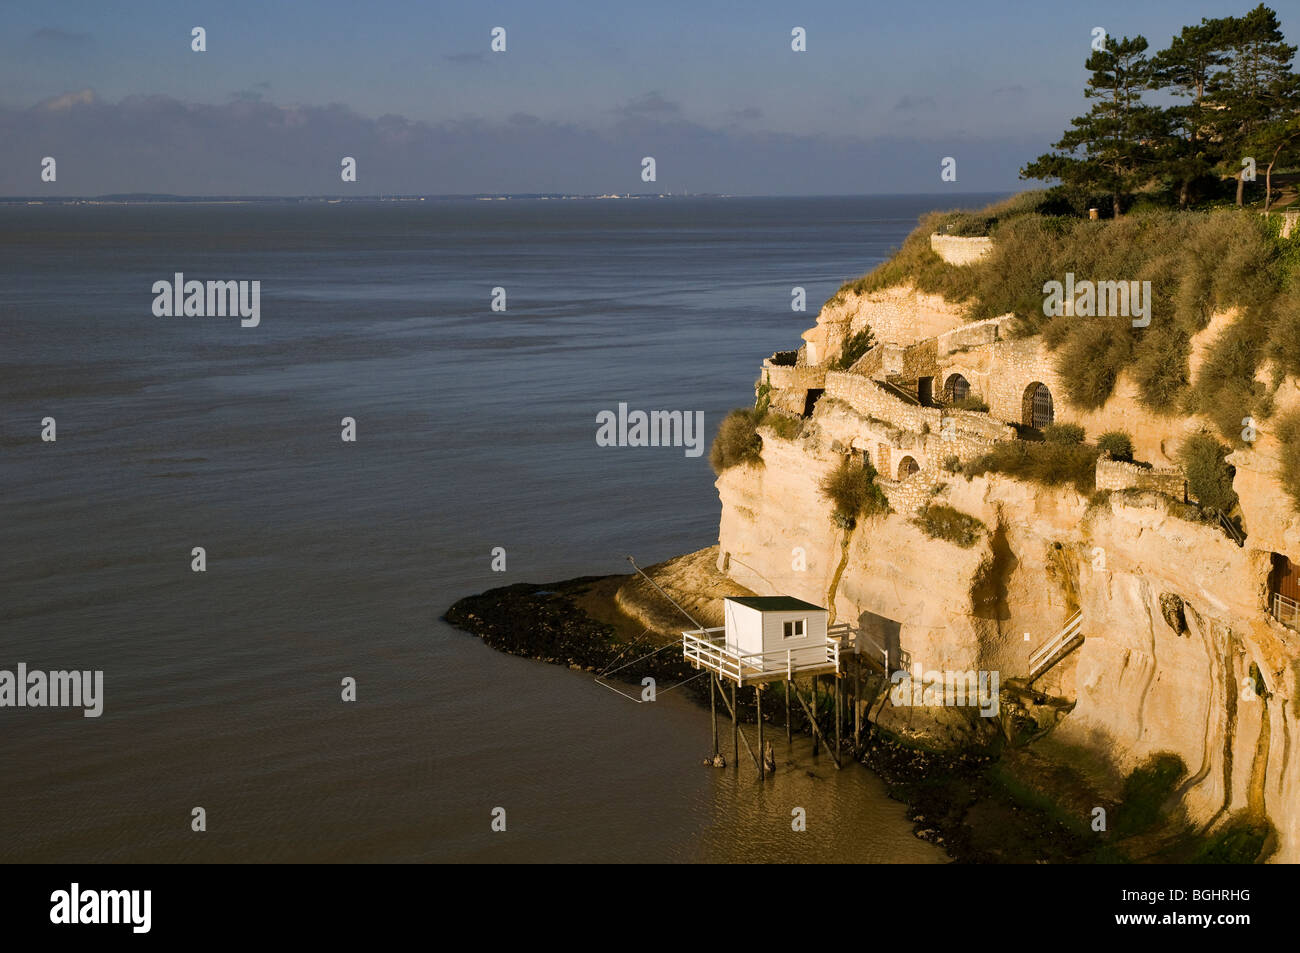 Logements des grottes dans les falaises sur Gironde riverside, Meschers-sur-Gironde, Charente-Maritime, France Banque D'Images